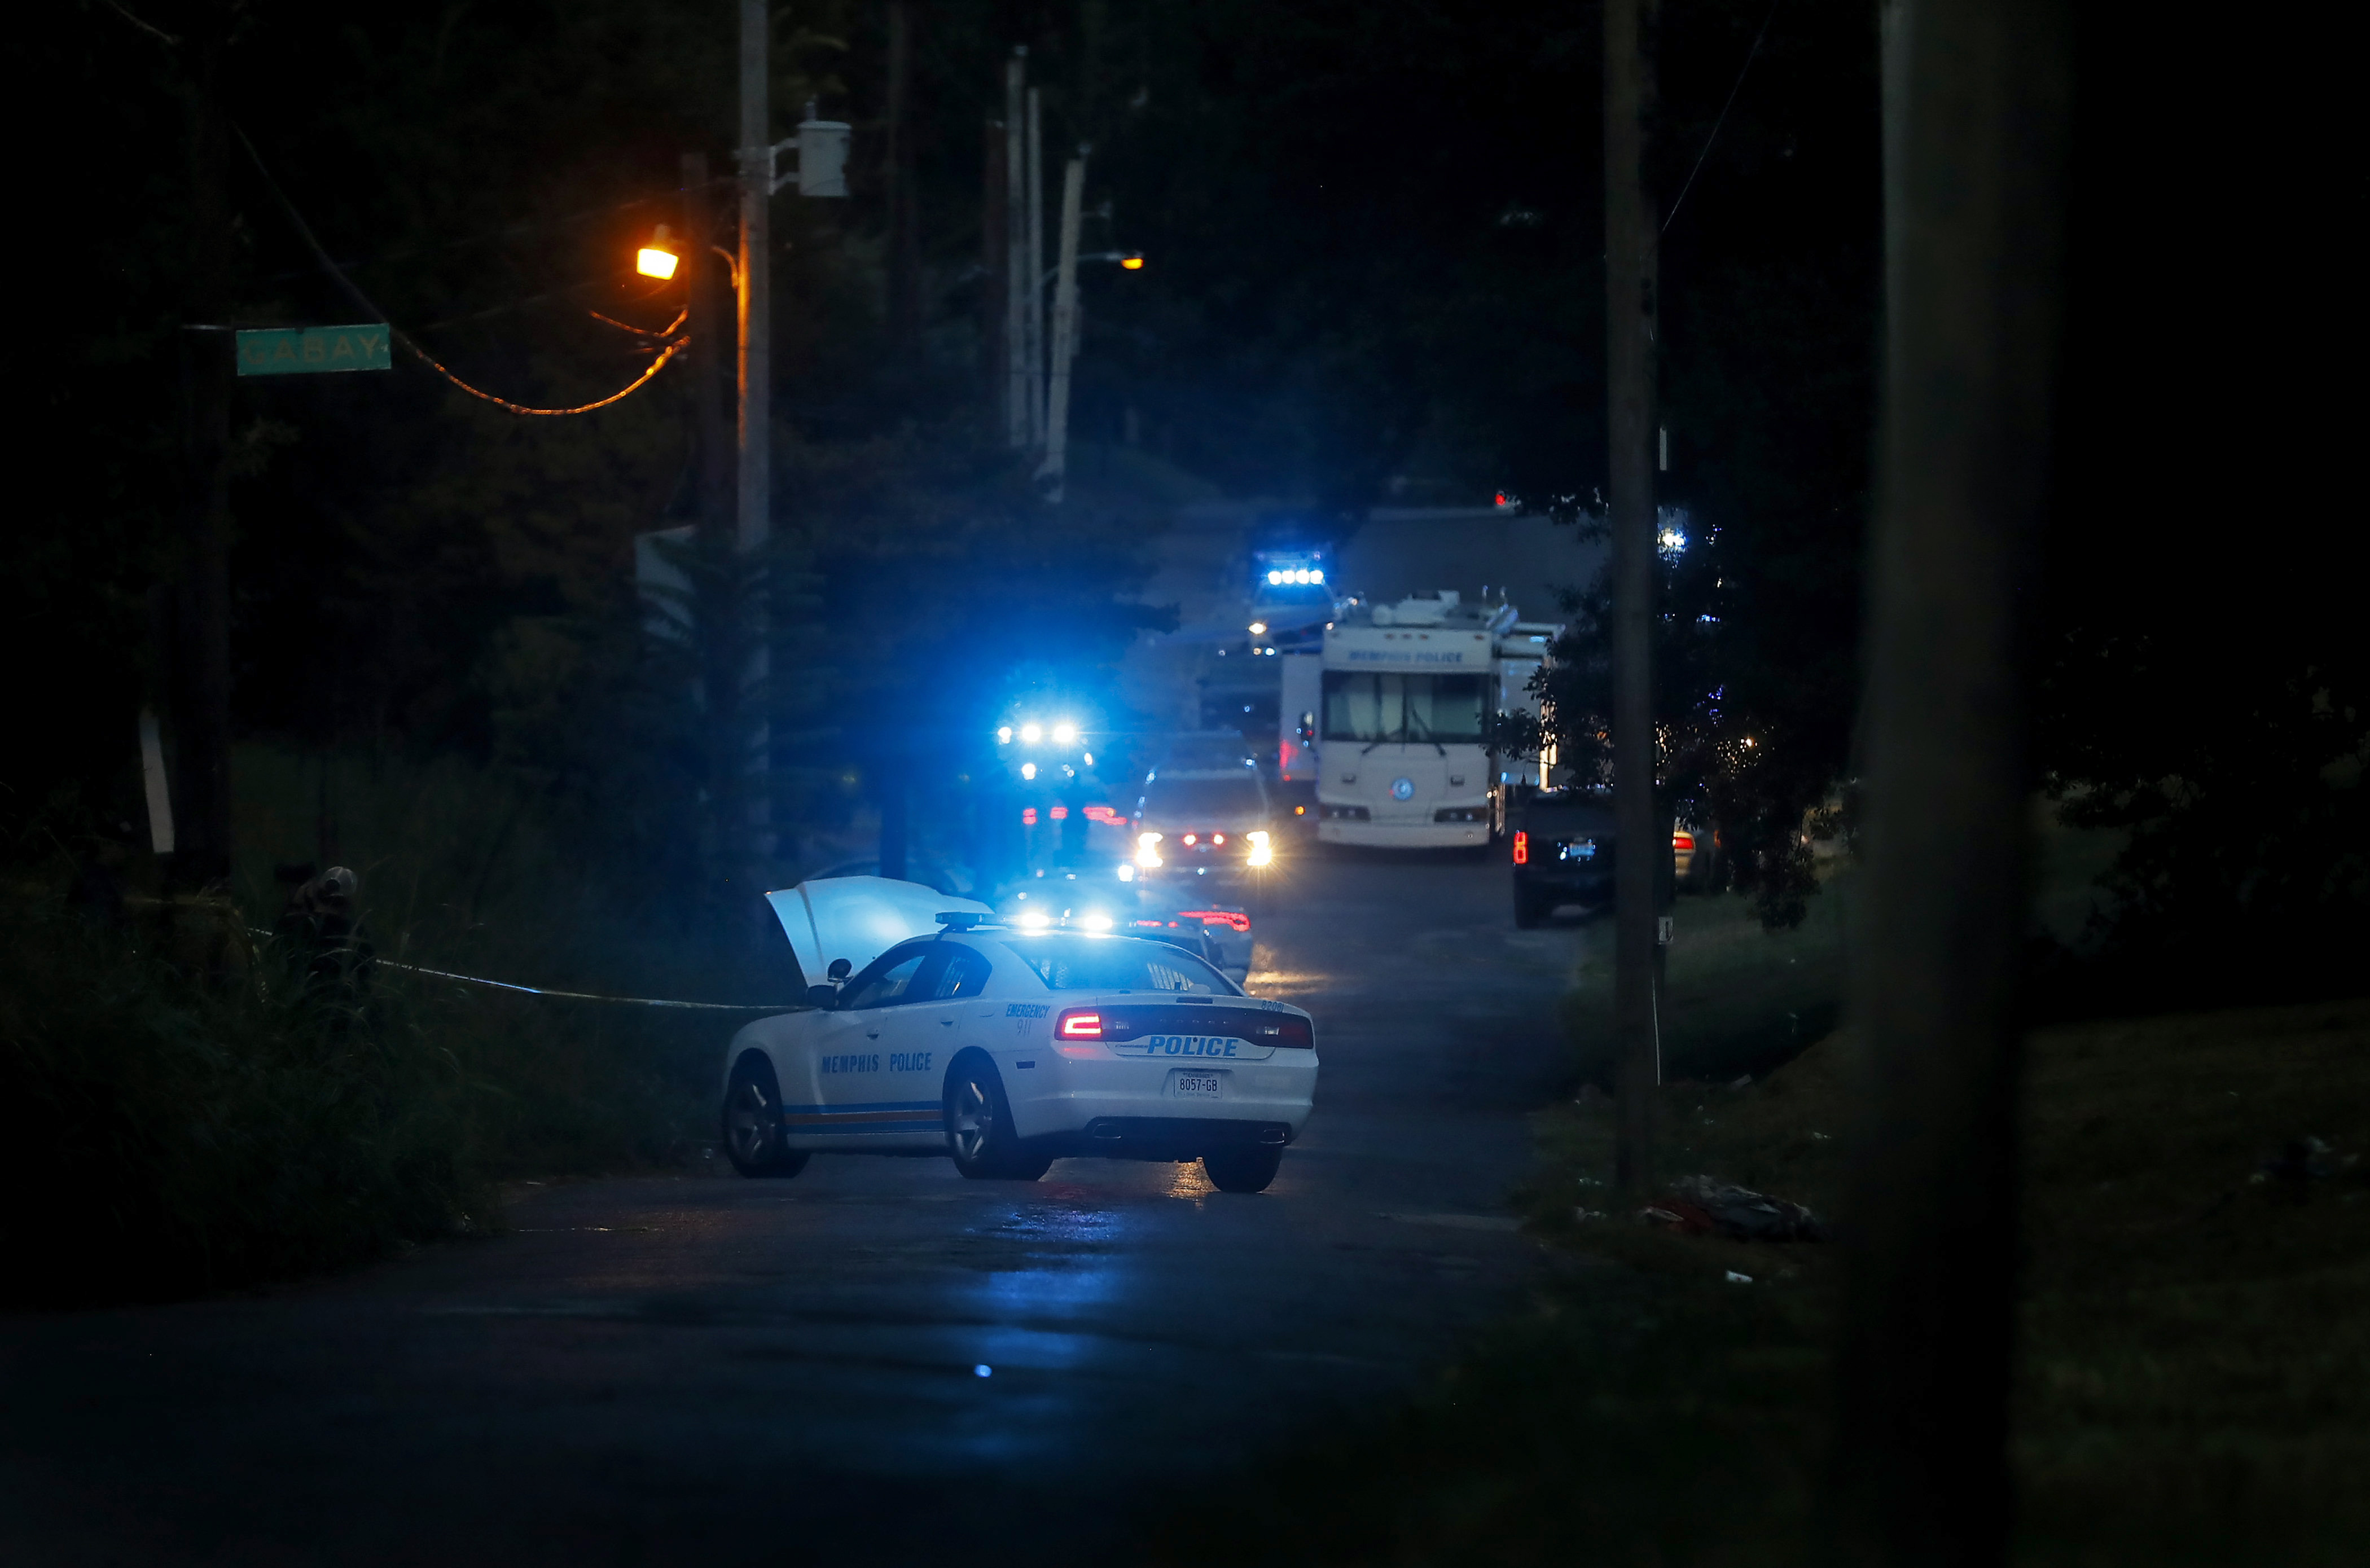 Al menos cuatro muertos y tres heridos dejó una serie de tiroteos registrados este jueves en Memphis (Tennessee, Estados Unidos), de acuerdo con reportes de la policía local. Un hombre condujo durante horas mientras disparaba a la gente y obligó a la población a refugiarse en lugares seguros.